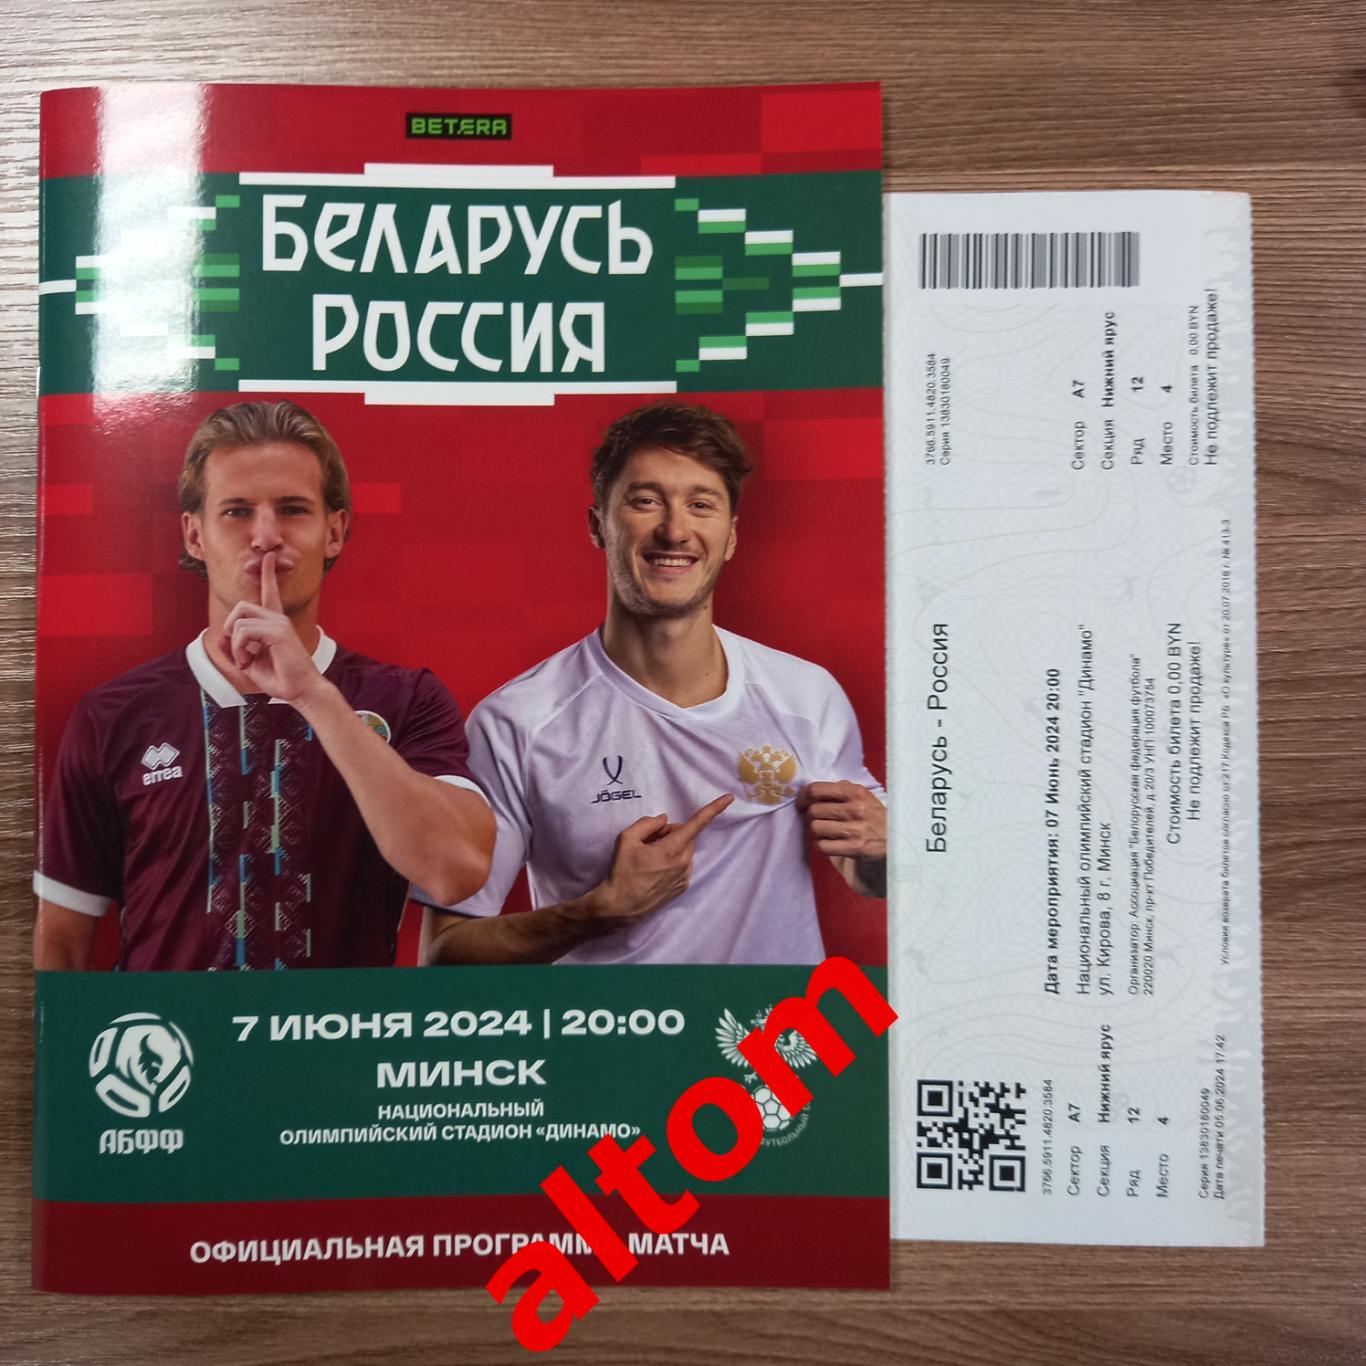 Беларусь Россия 2024 официальный вид + билет Минск